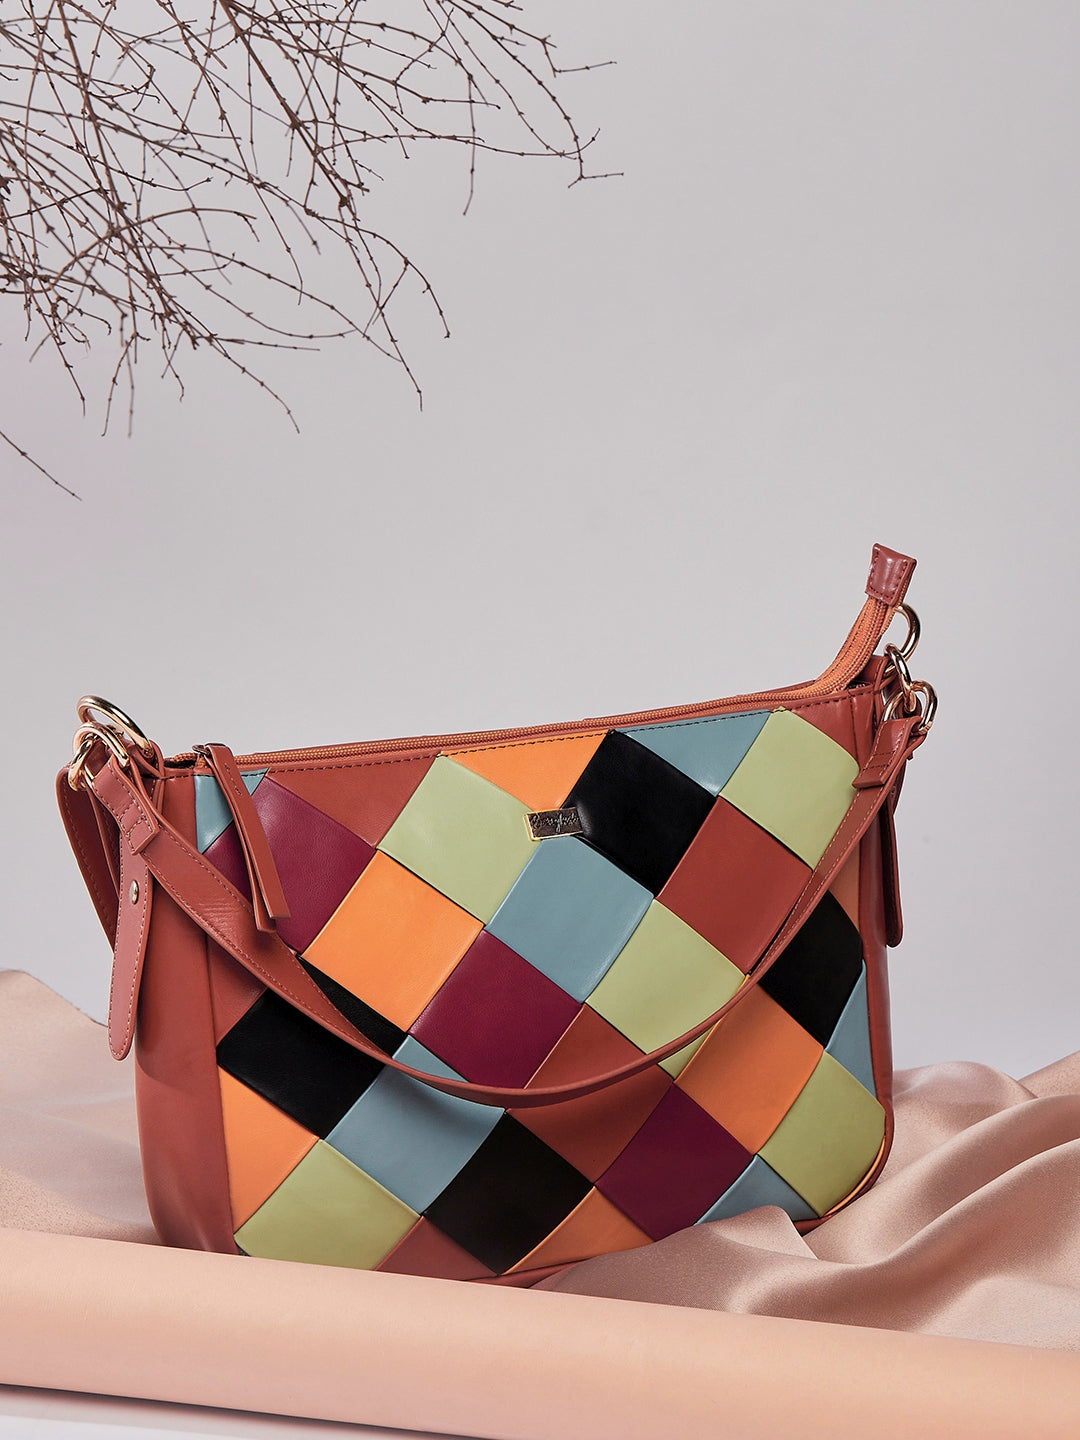 Geometric Pattern Sling Bag, Multi Zipper Crossbody Bag, Casual